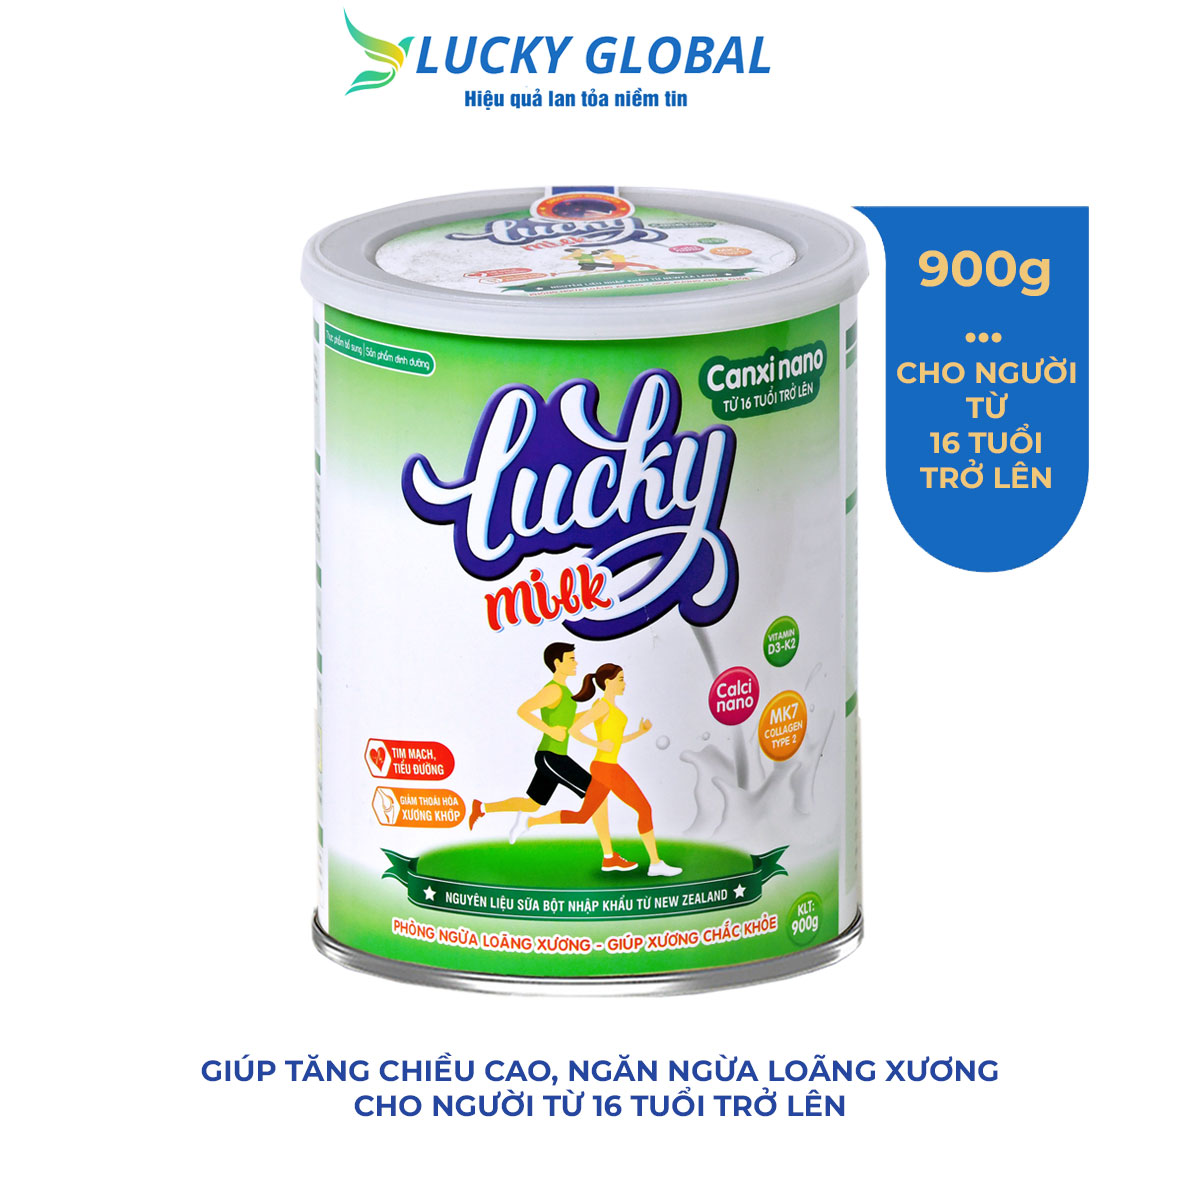 Sữa bột Luckymilk Canxi Nano tăng chiều cao cho người trên 16 tuổi